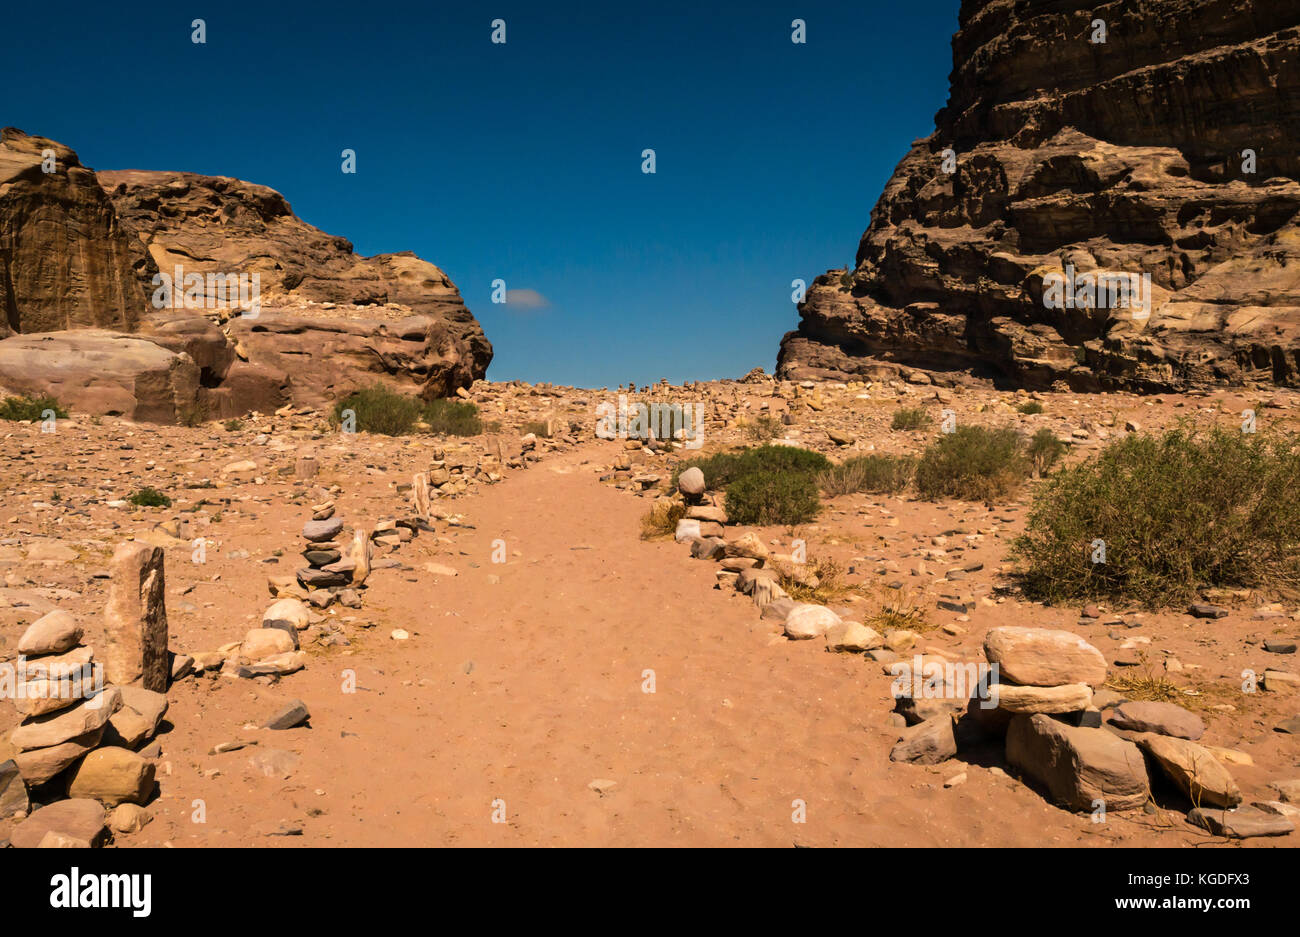 Chemin de sable bordée d'inukshuks ou cairns de pierre menant au sommet de montagne, Ad Deir, Petra, Jordanie, Moyen-Orient Banque D'Images